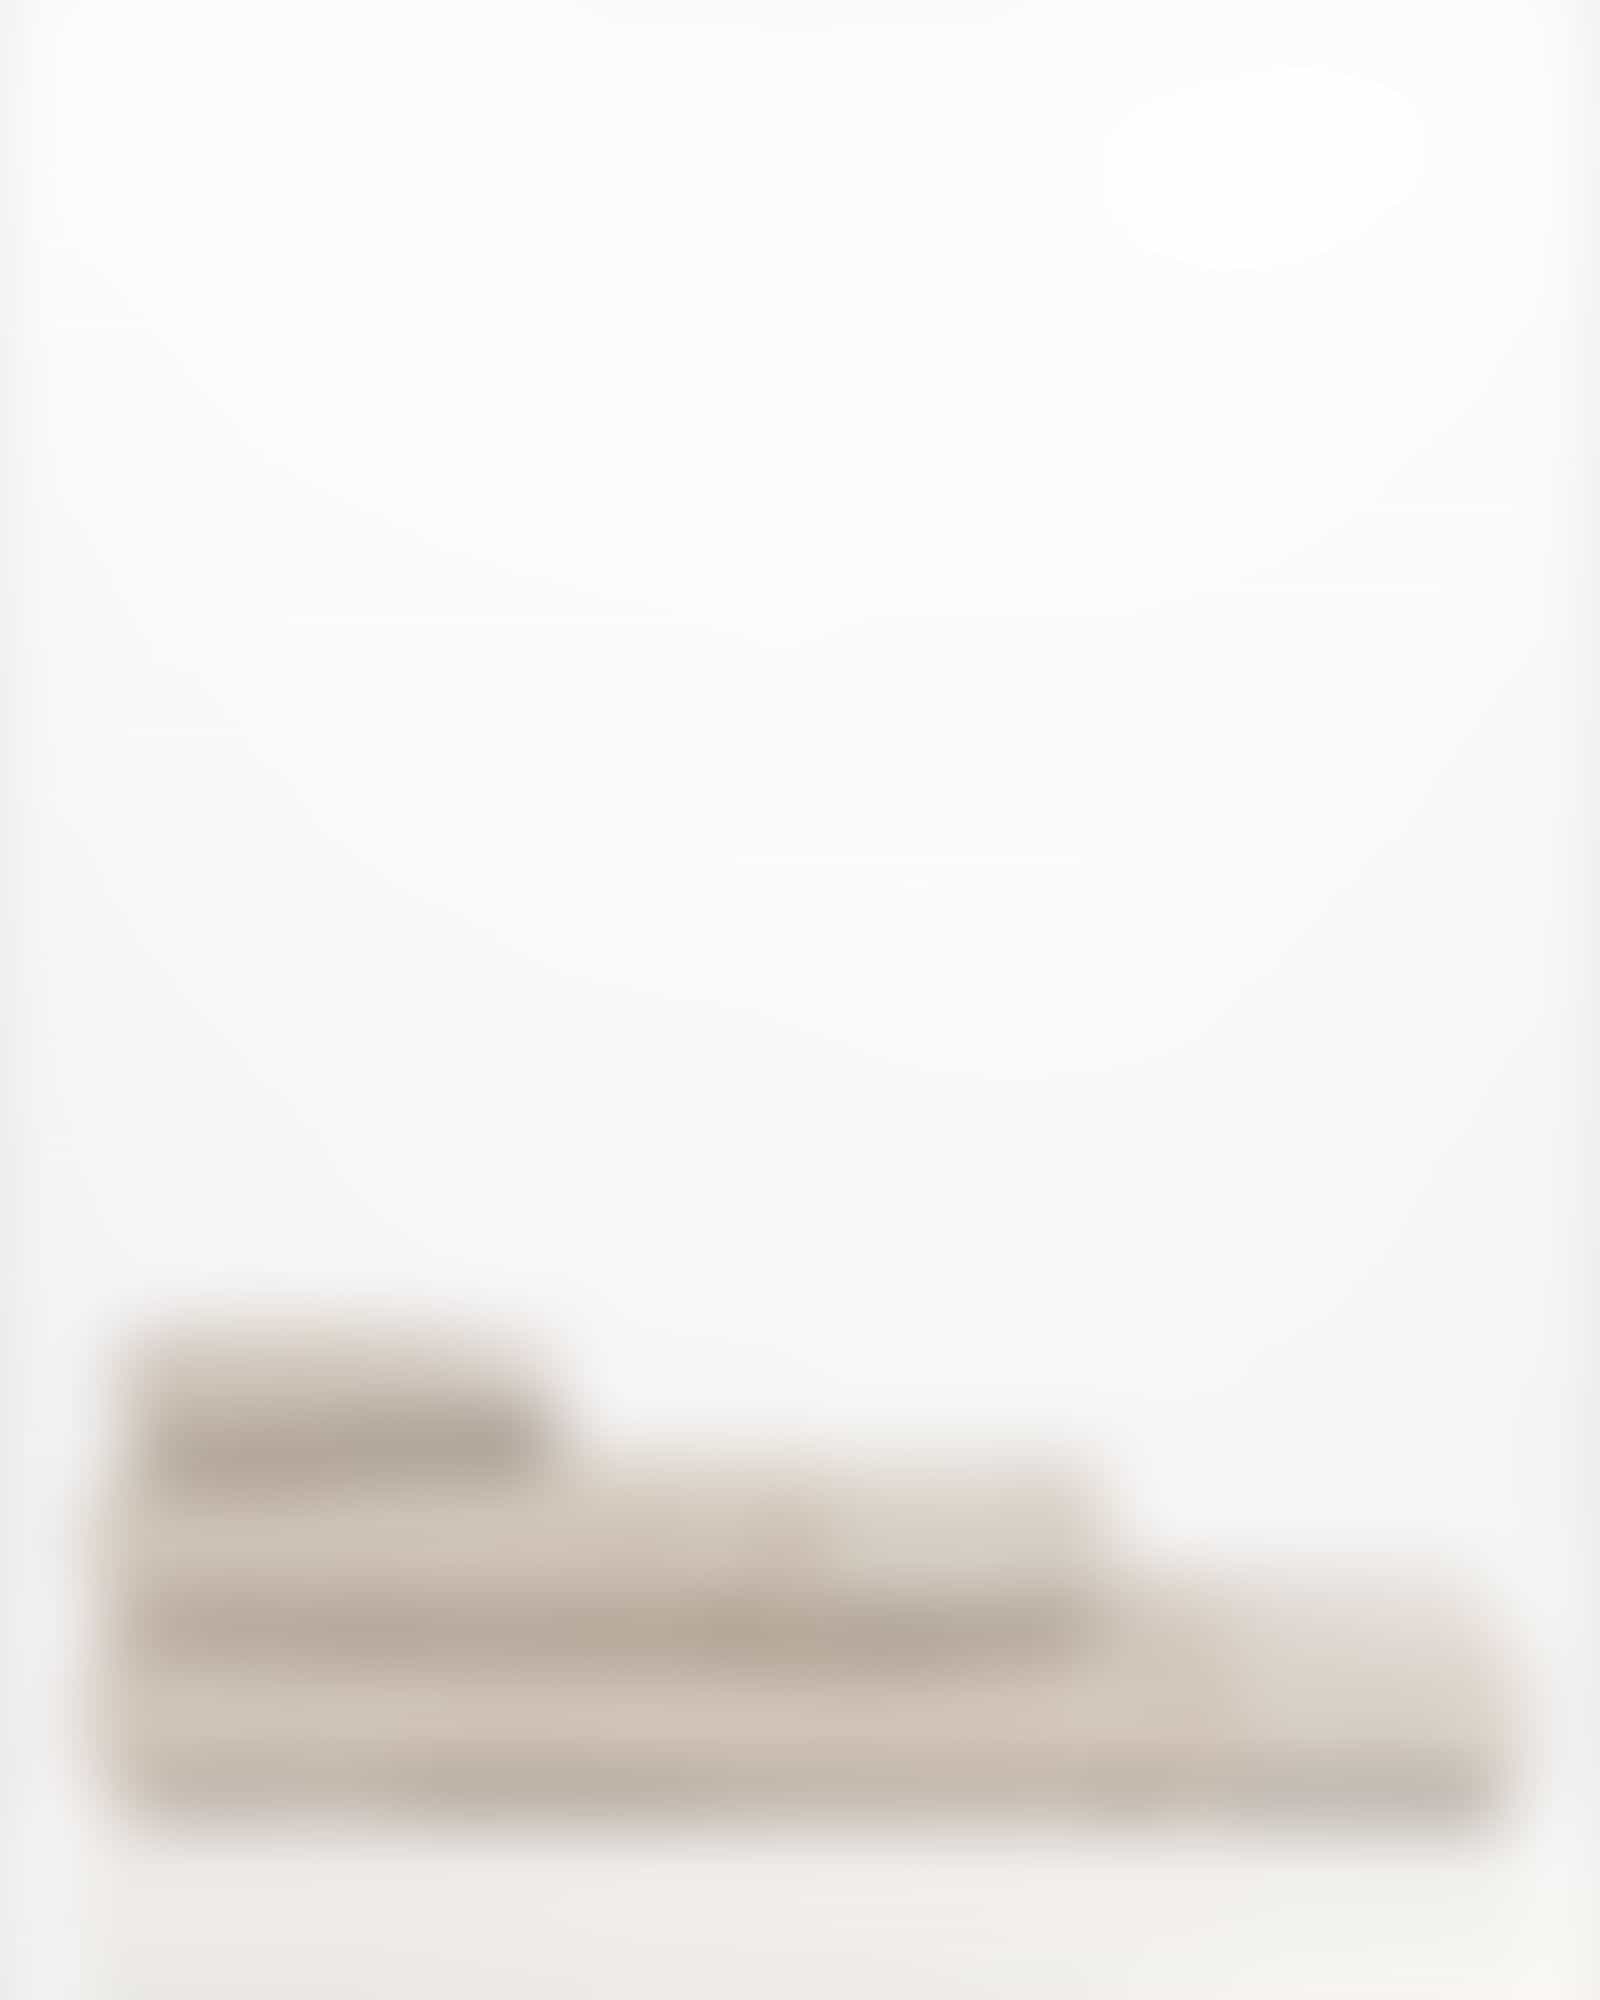 Möve Handtücher Wellbeing Perlstruktur - Farbe: cashmere - 713 - Seiflappen 30x30 cm Detailbild 3